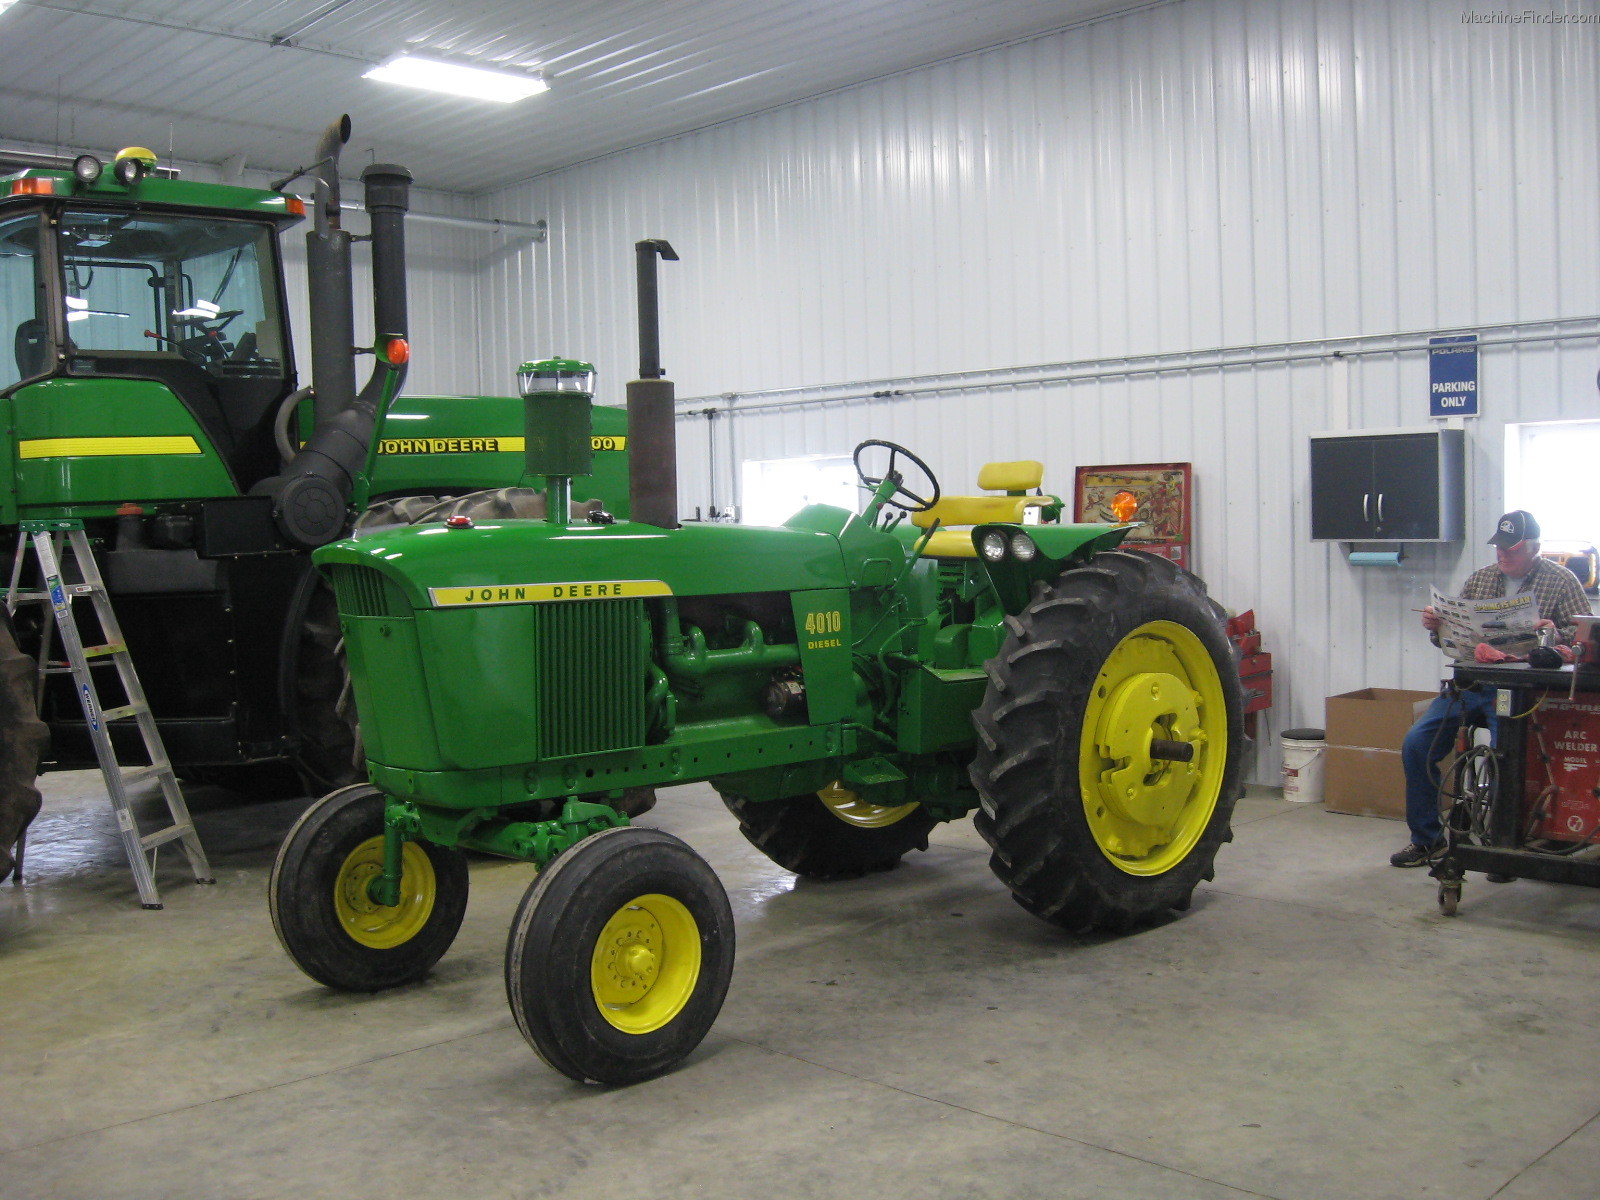 John Deere 4010 Tractors - Row Crop (+100hp) - John Deere ...